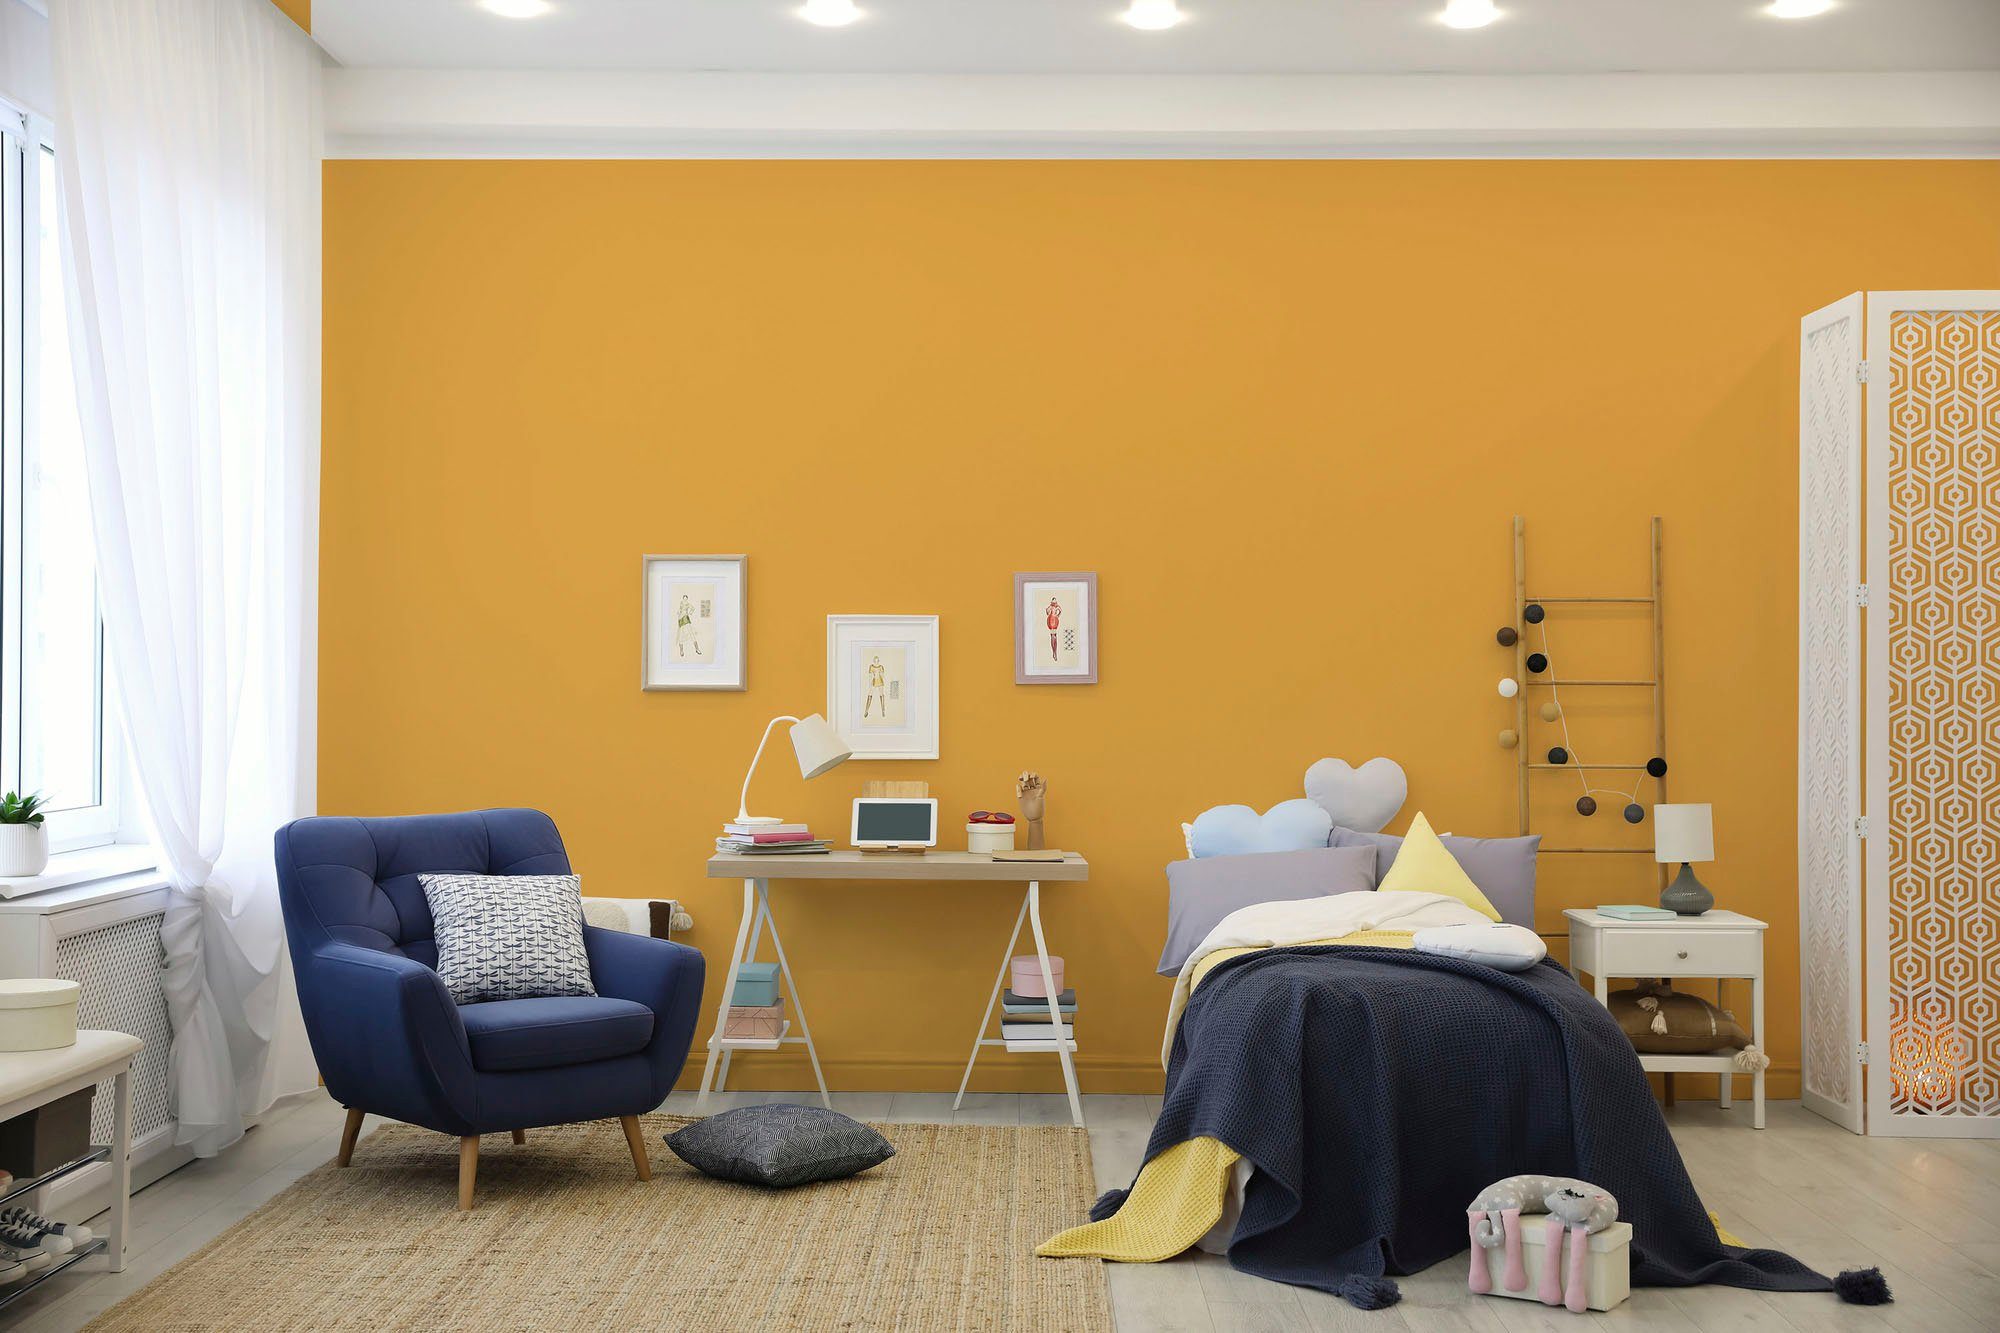 Tuchmatt sunny Schlafzimmer, A.S. yellow, Innenwandfarbe Flur Premium für Farbwelt PURO und sunny Wandfarbe Création Küche, ideal c8006 yellow Wohnzimmer, Gelb